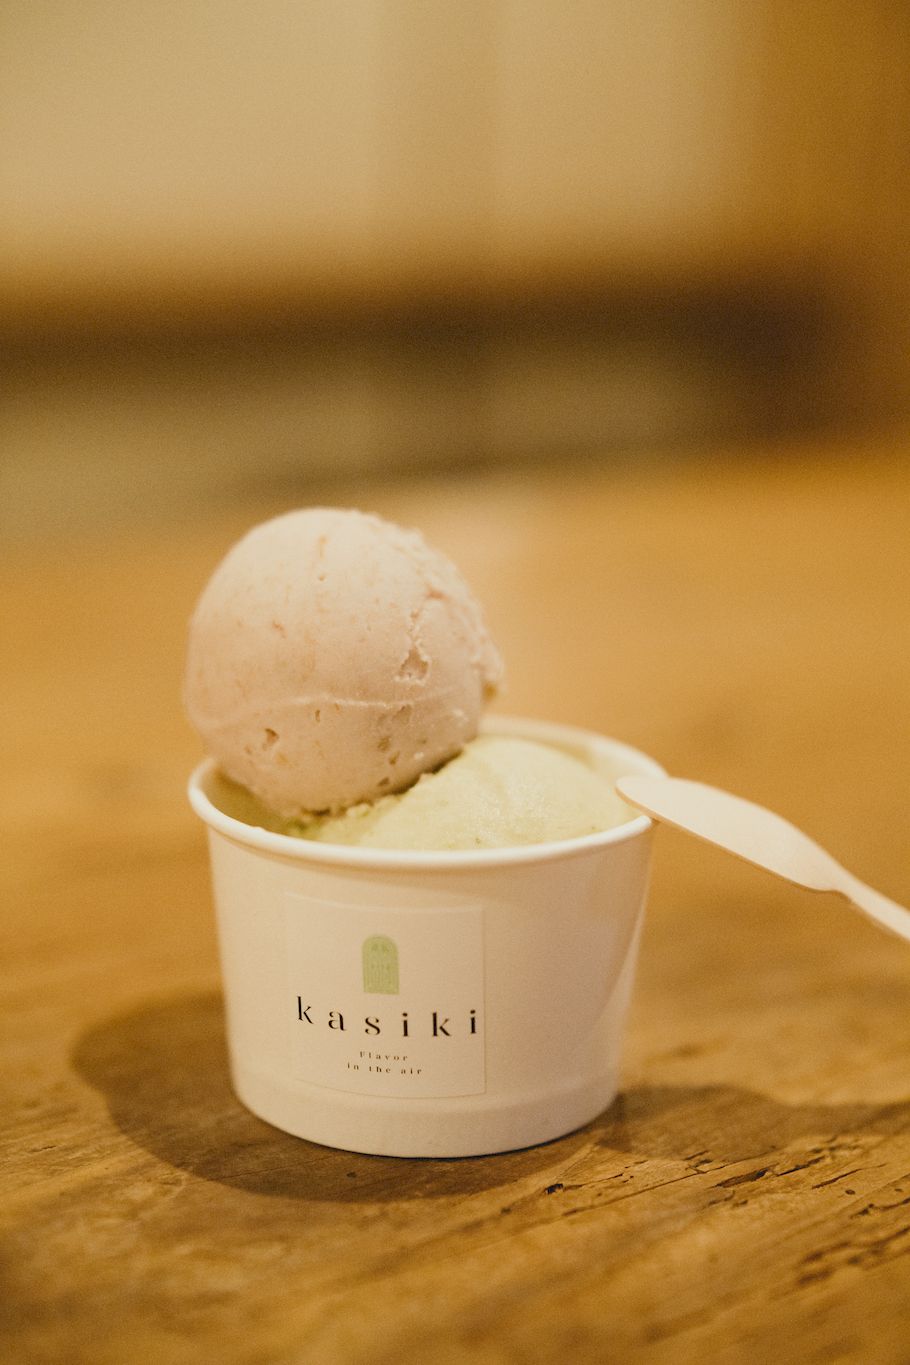 隔週でしか開かないアイス屋「kasiki」。メディア初登場、藤田澄香さんのアイスの流儀とは？ 連載「#ふうかとあいす」